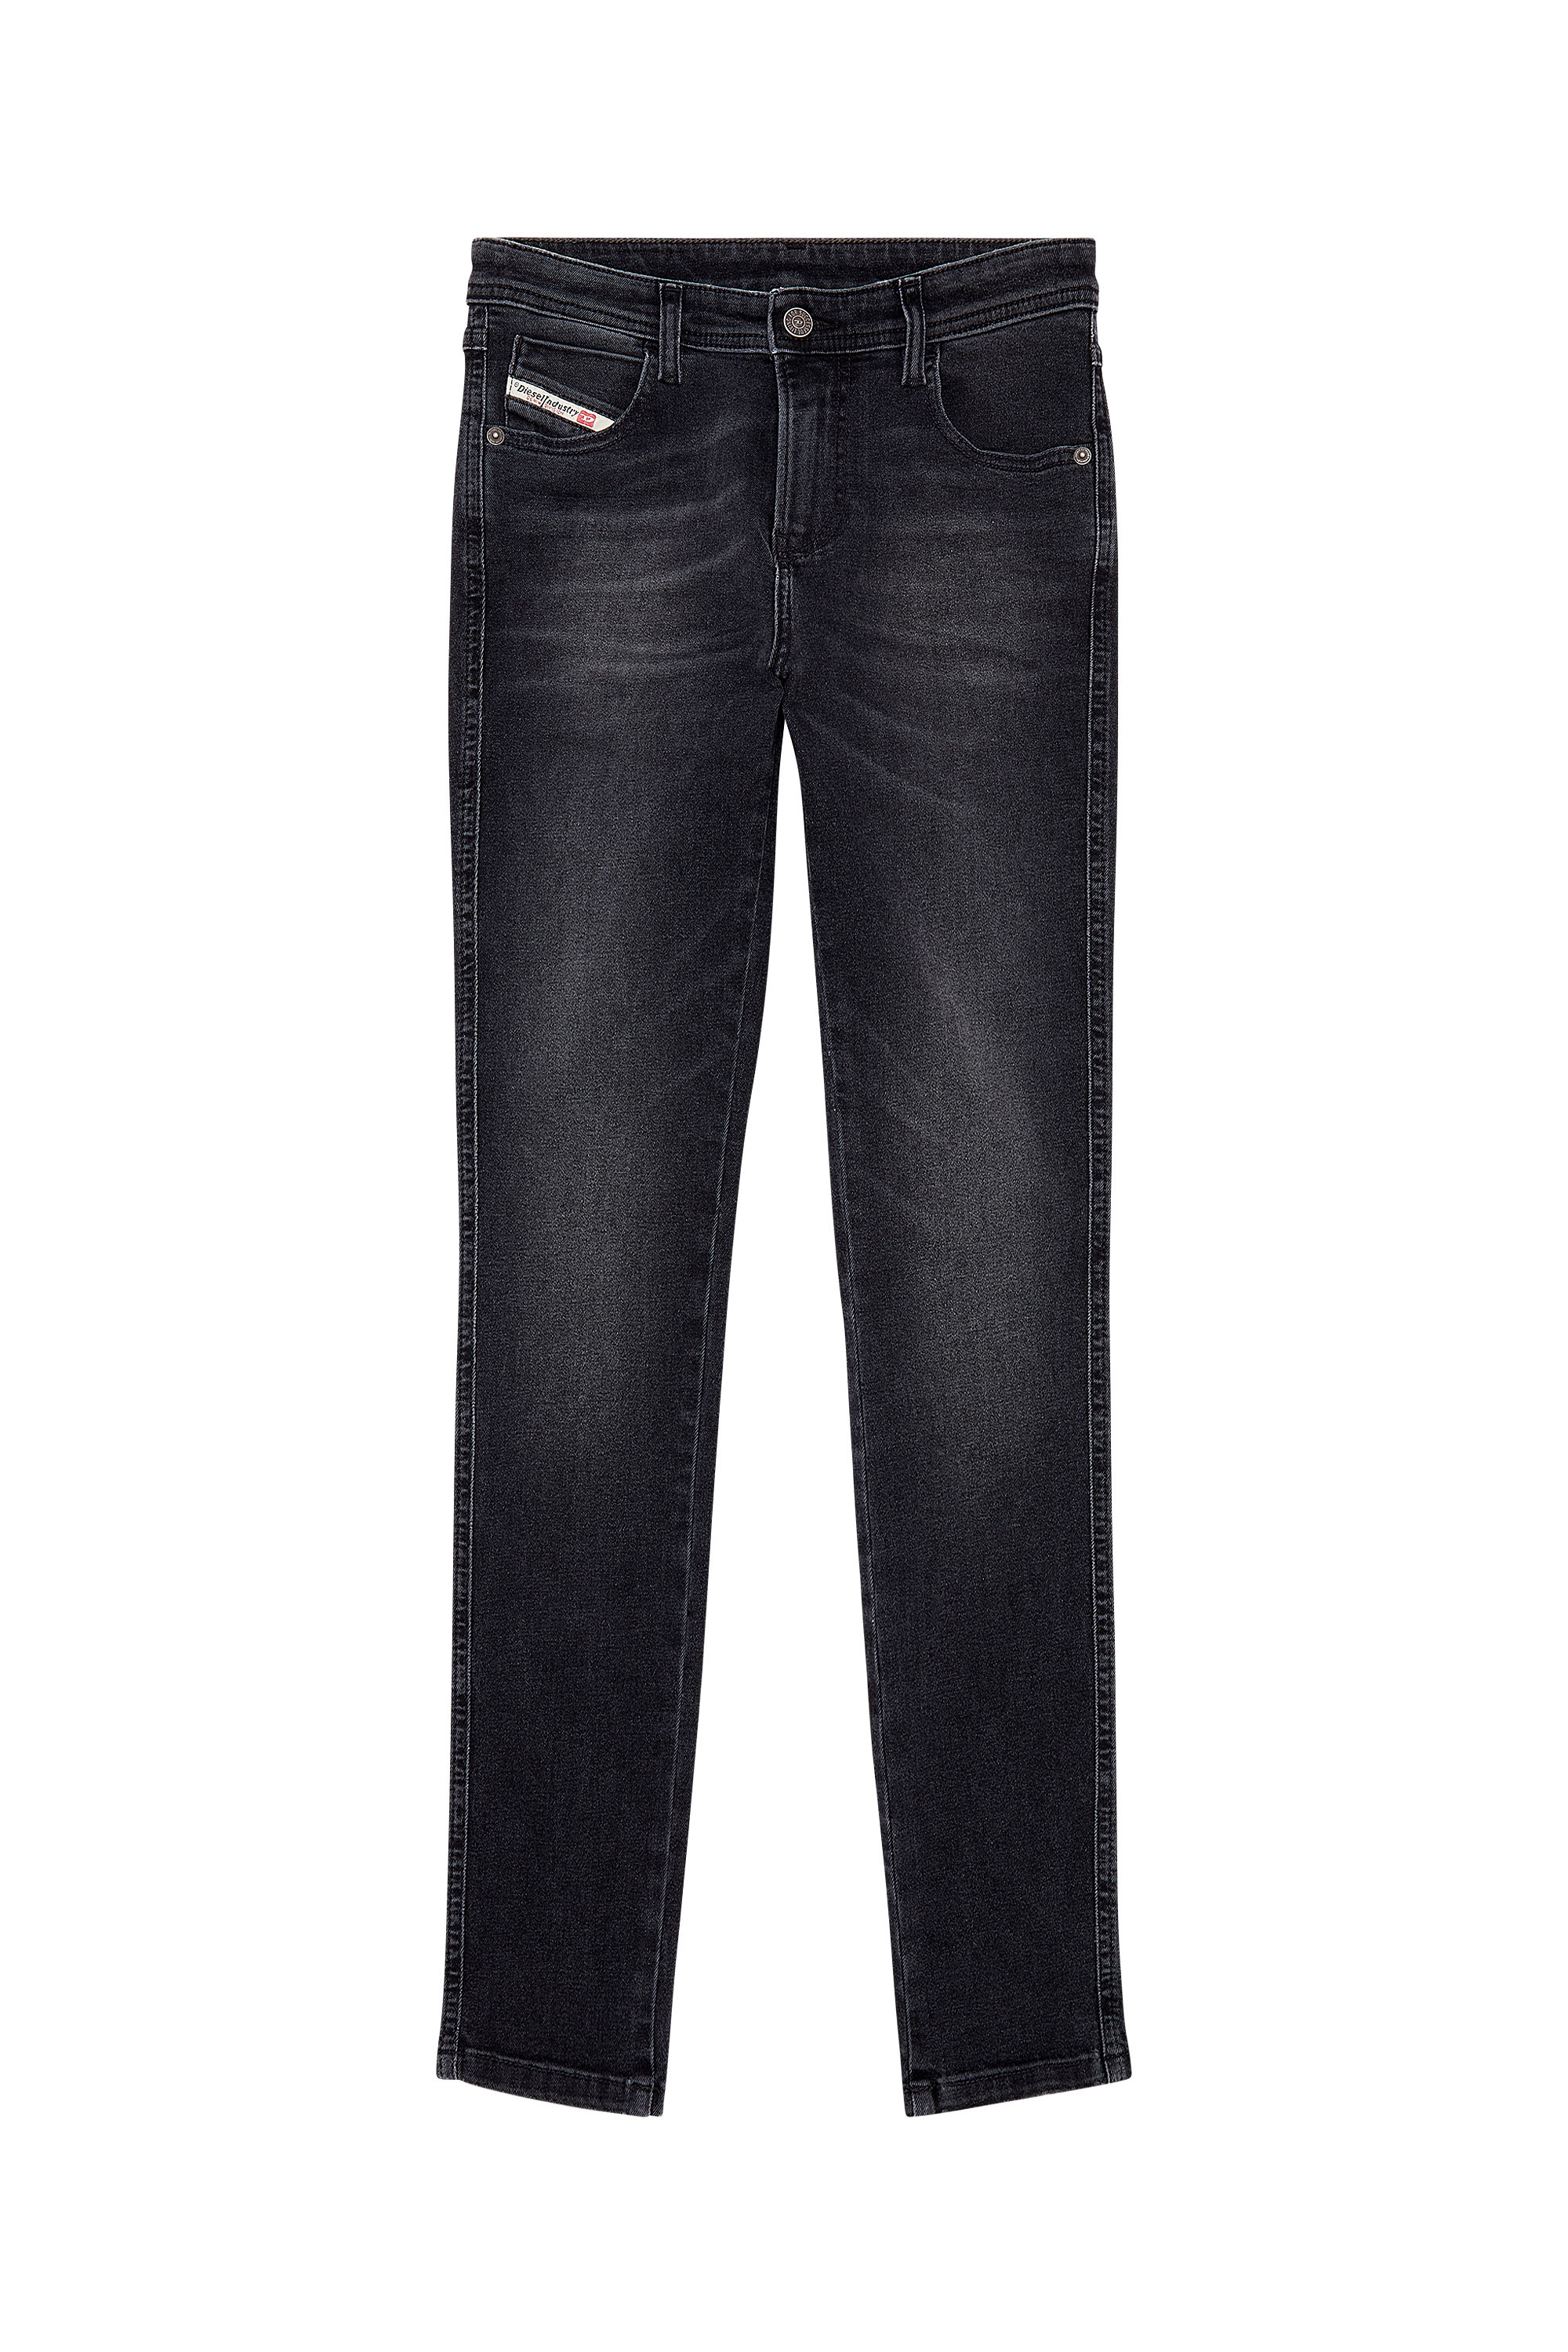 Diesel - Skinny Jeans 2015 Babhila 0PFAS, Noir/Gris foncé - Image 5